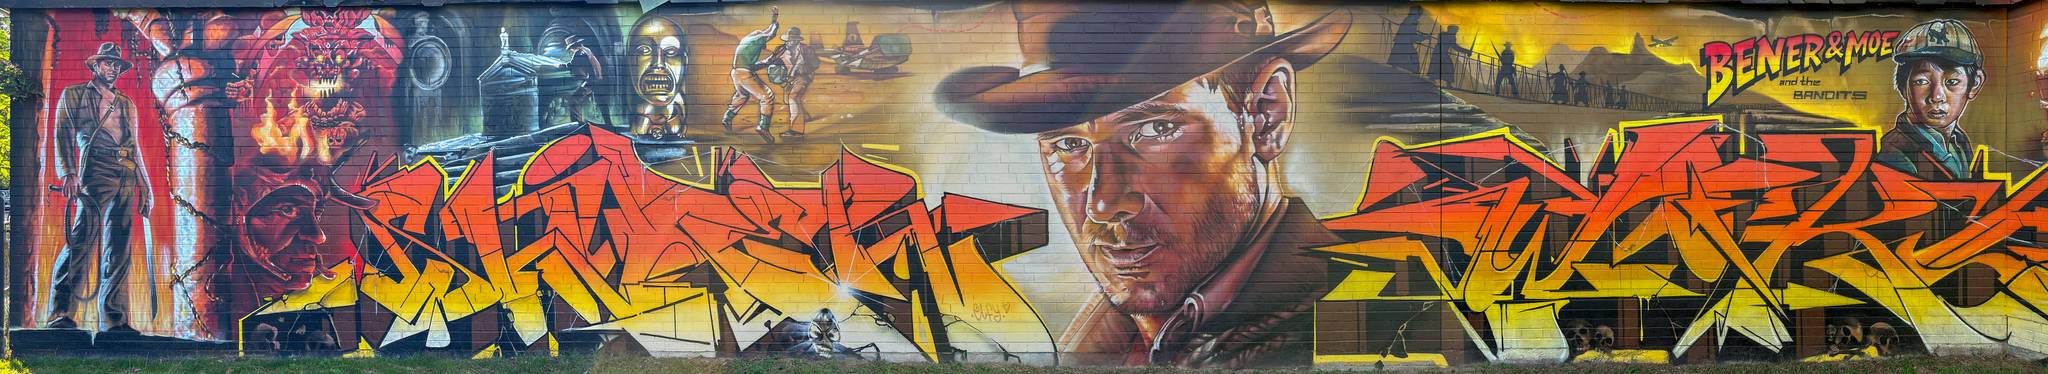 BENER & Moe and the Bandits&mdash;Indiana Jones